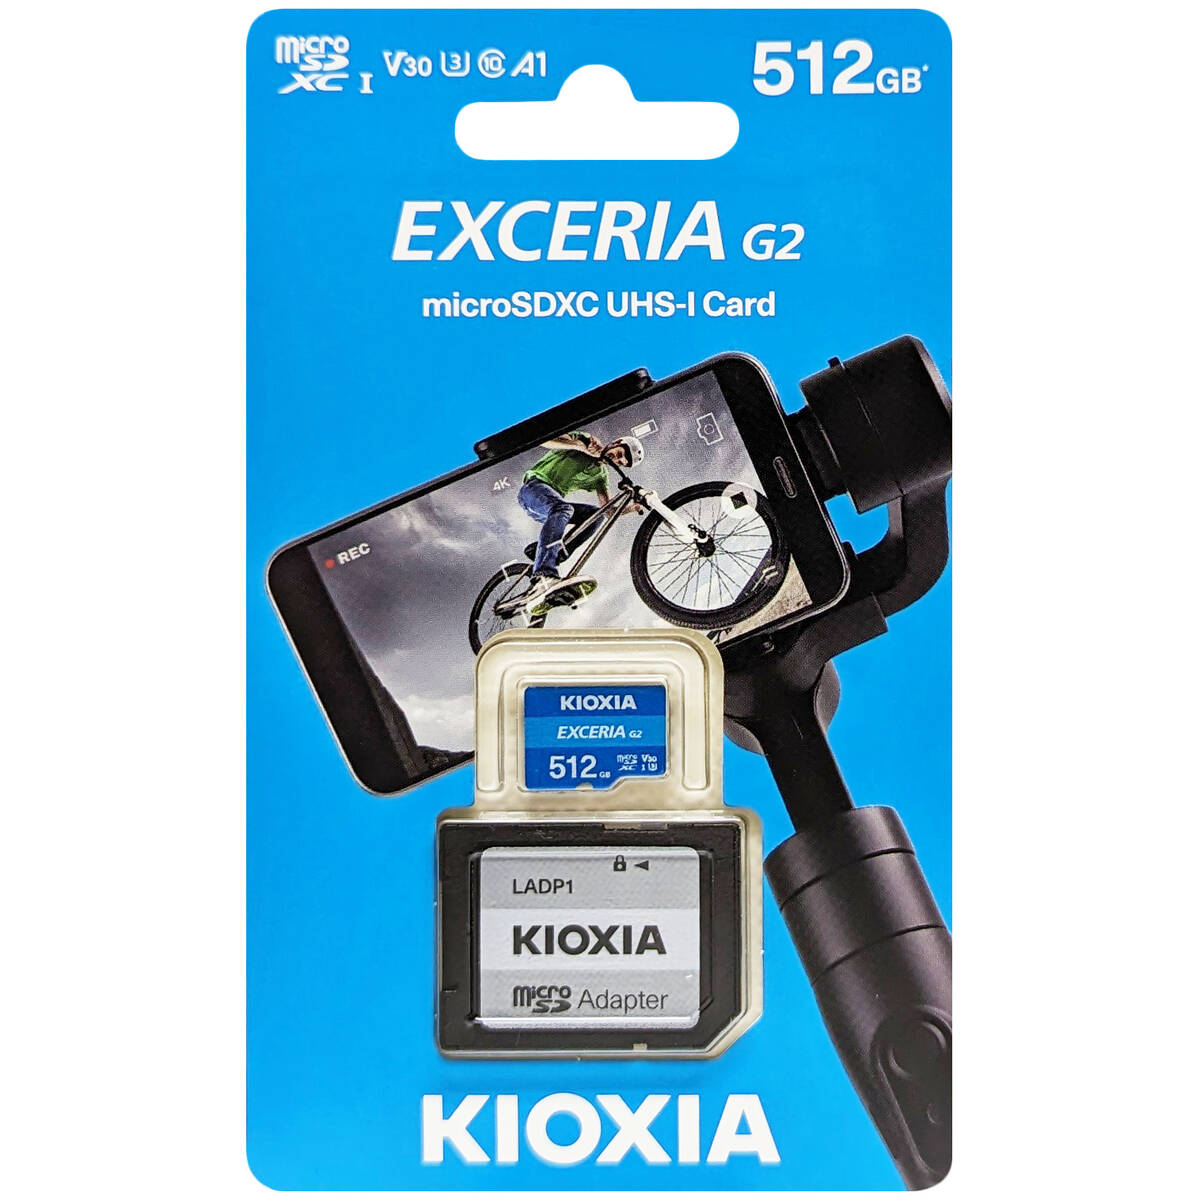 キオクシア KIOXIA 並行輸入品 マイクロSDXCカード EXCERIA G2 512GB LMEX2L512GG2